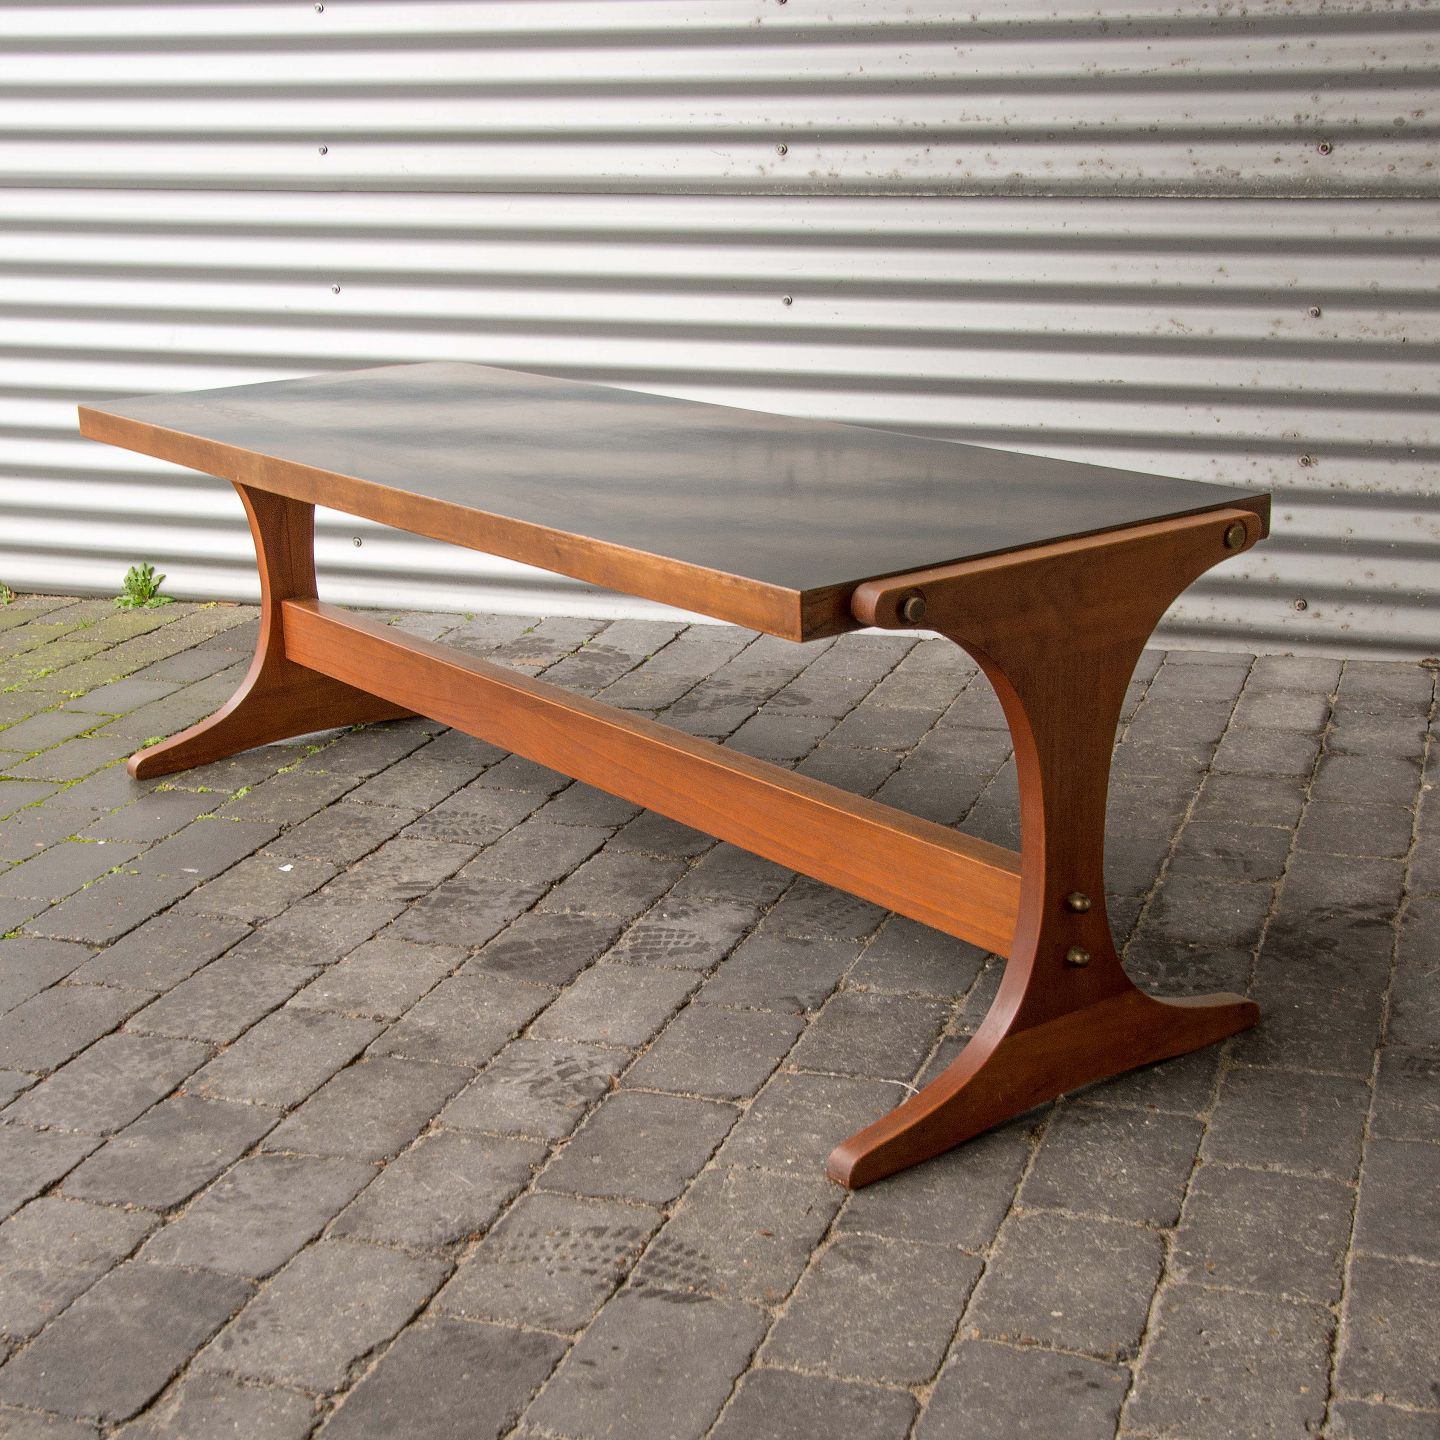 KAD ringen - Dansk design * Aflangt sofabord i teak og formica - Dansk design Aflangt sofabord i teak og